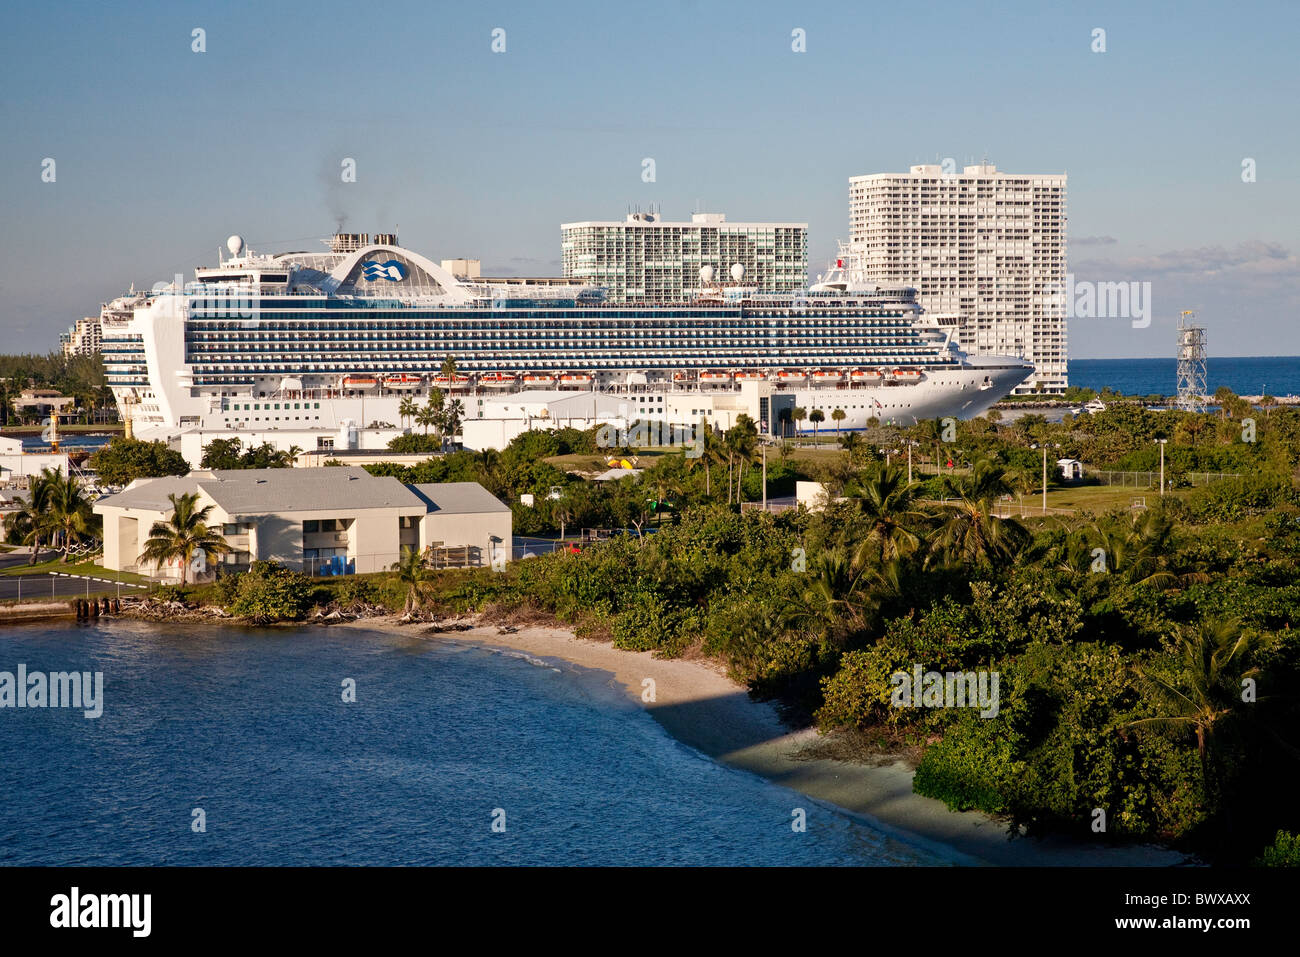 Les grands navires de croisière de luxe au départ de Port Everglades à Fort Lauderdale Floride;;USA;Amérique du Nord Banque D'Images